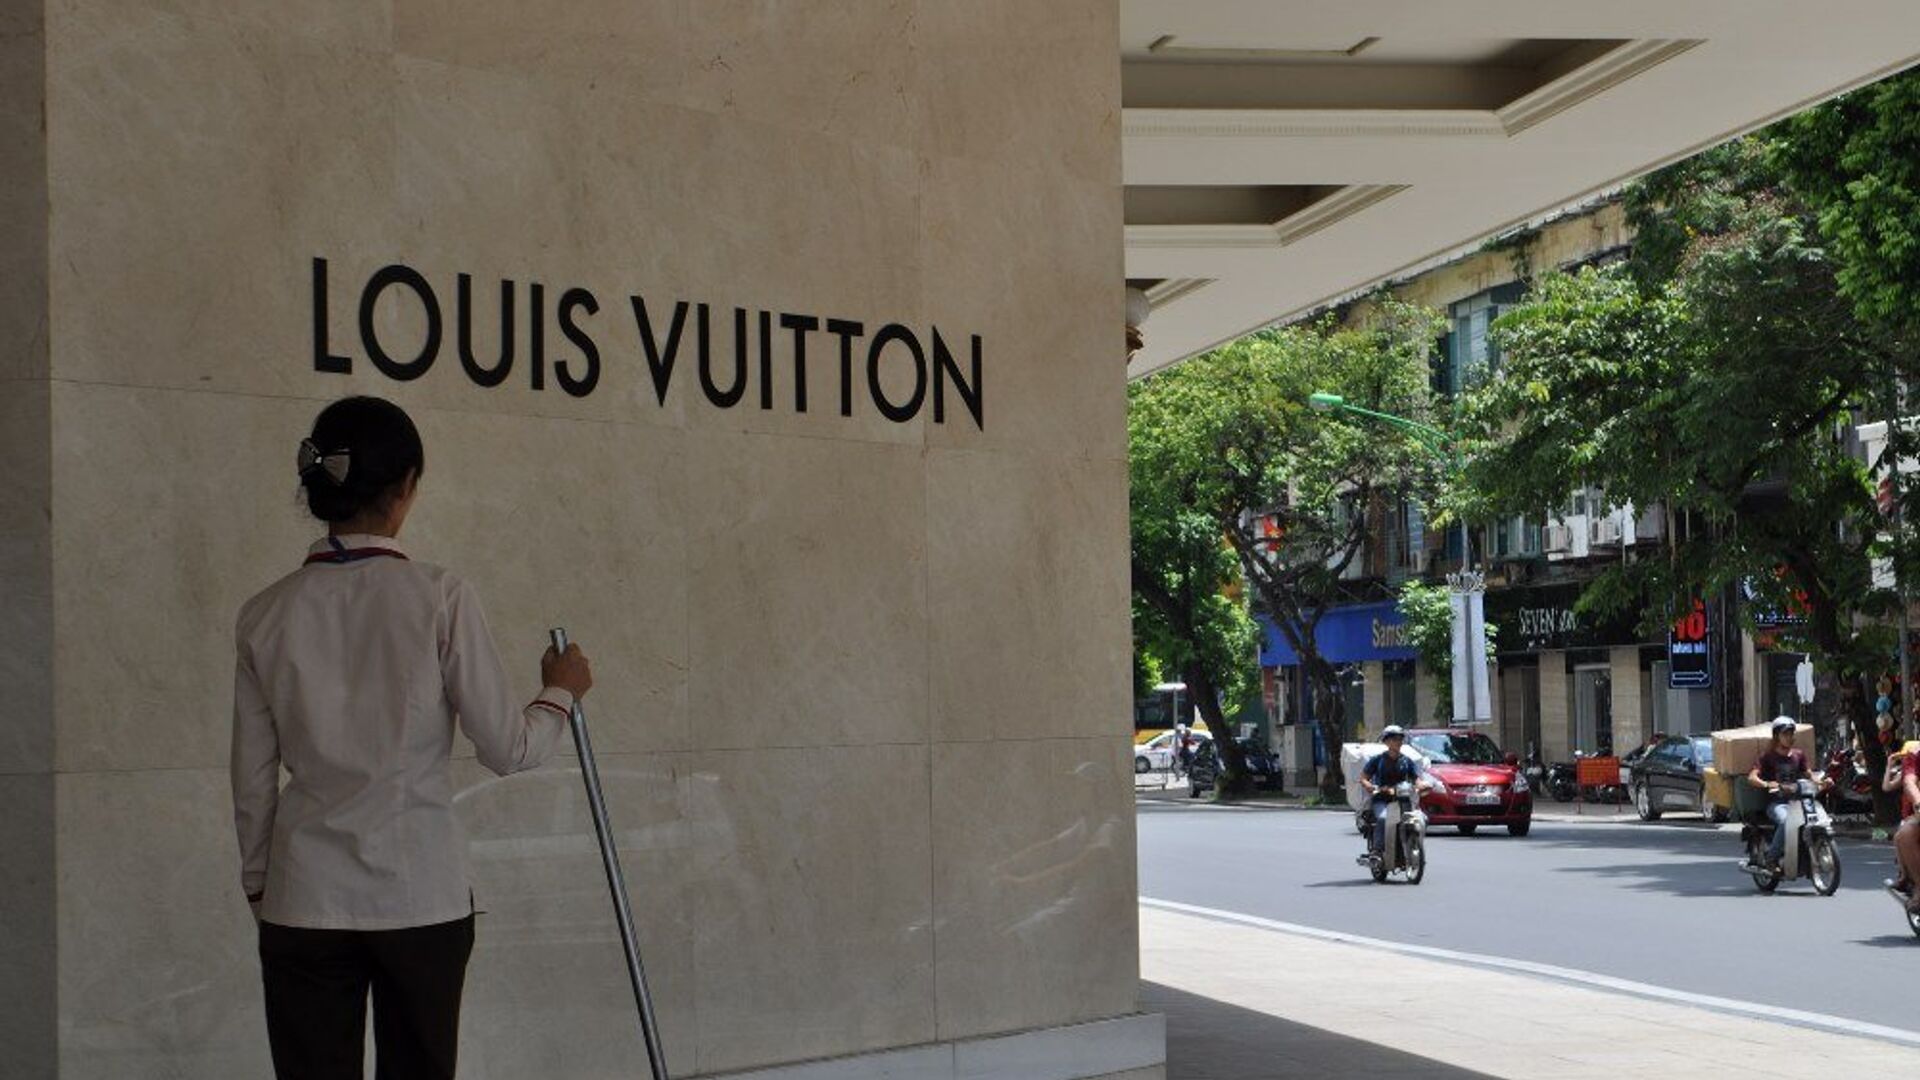 Không chỉ HM mà cả Louis Vuitton Gucci Chanel  cũng đăng bản đồ đường  lưỡi bò